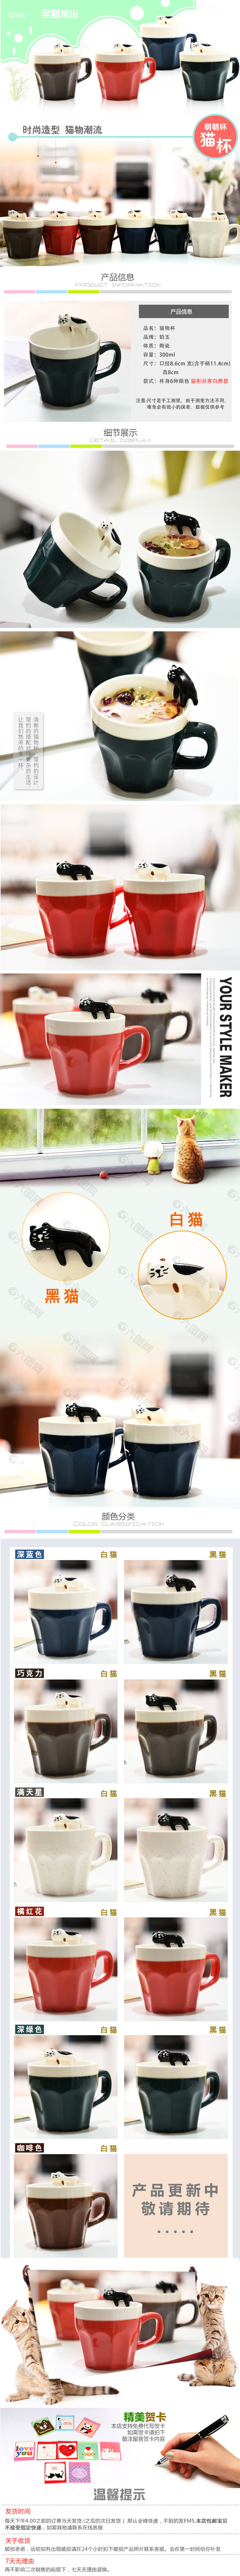 淘宝创意陶瓷猫形马克杯详情页设计